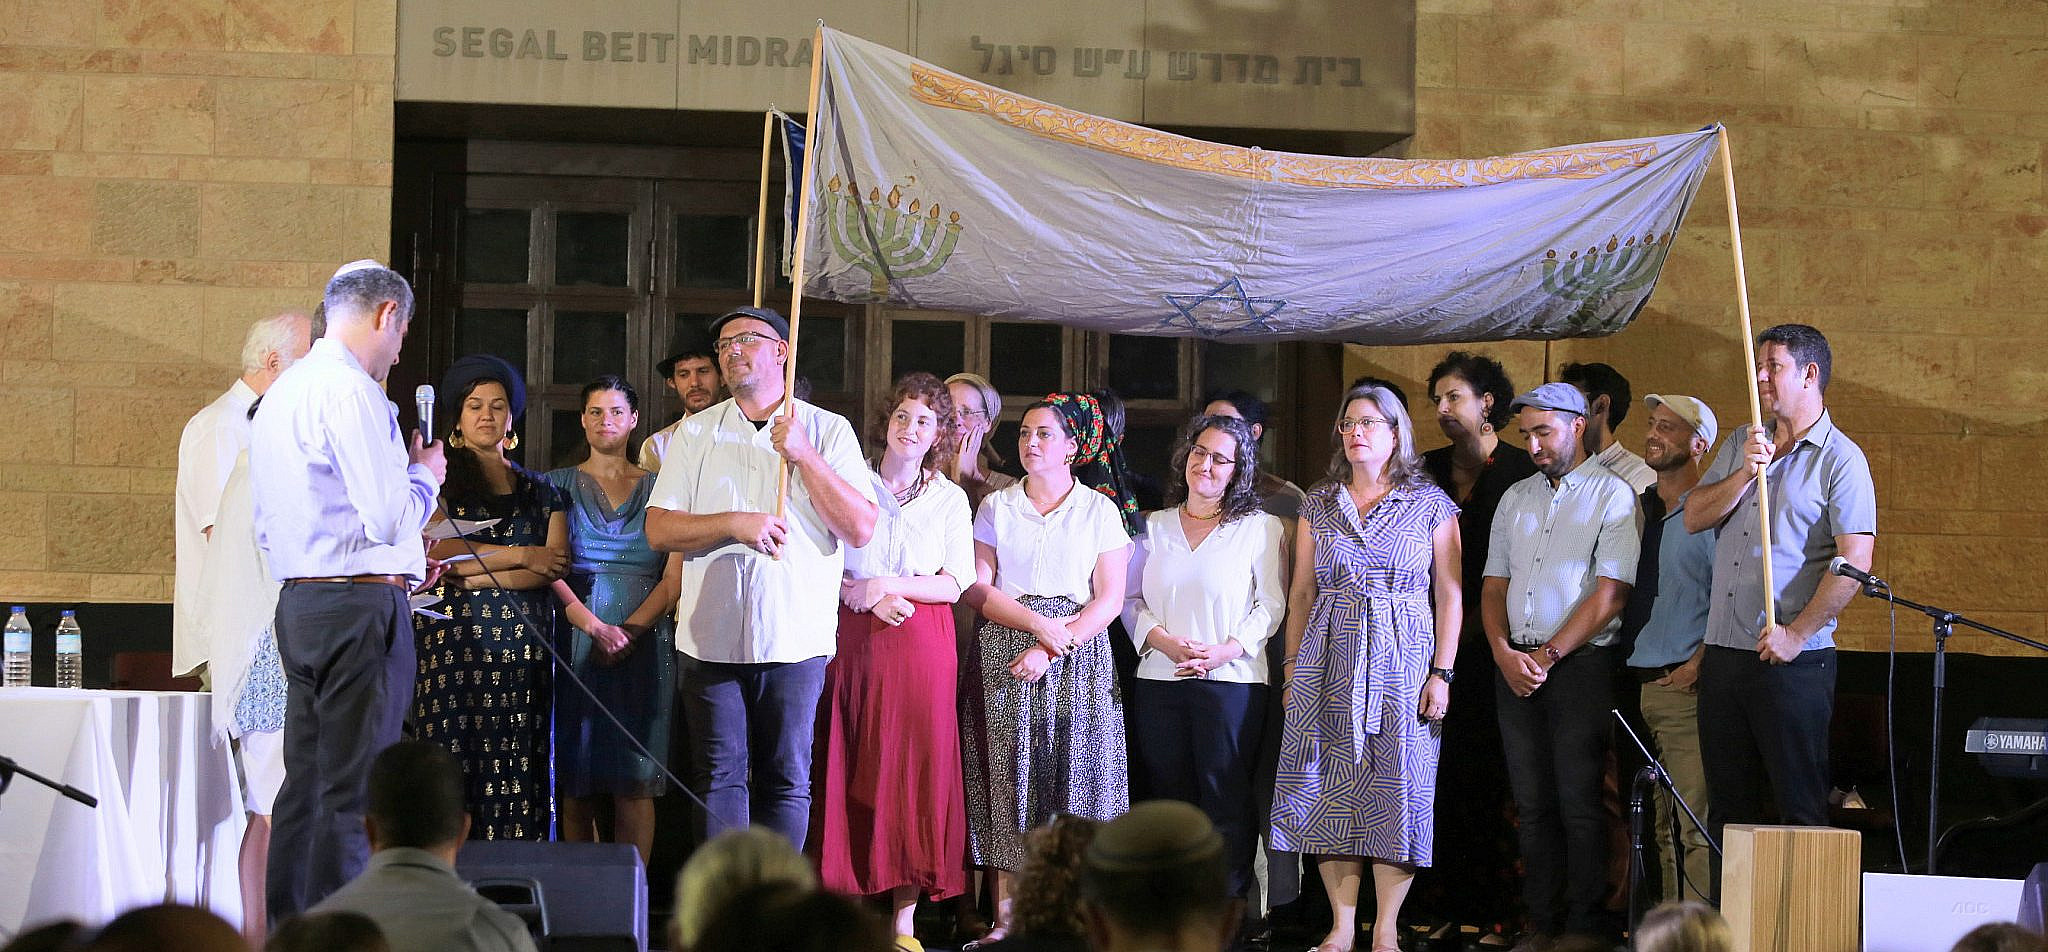 Beit Midrash for Israeli Rabbis